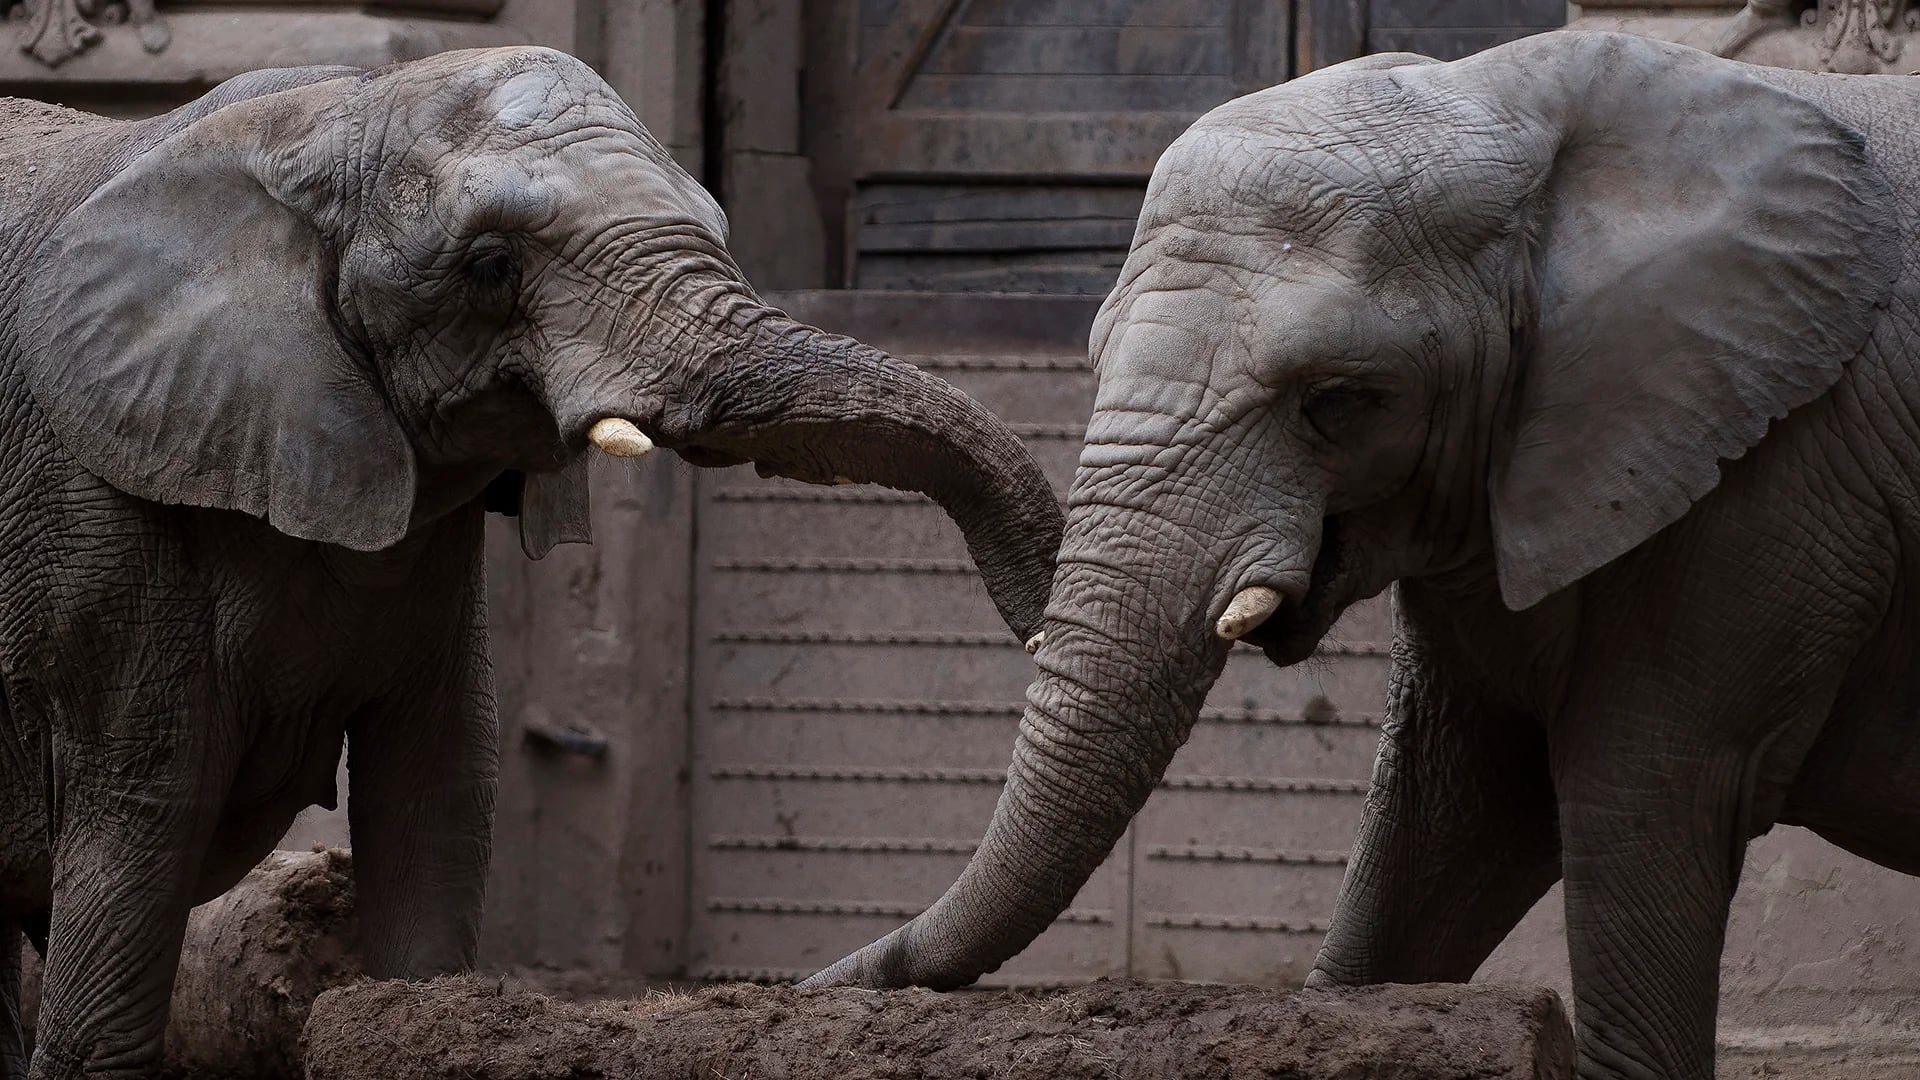 Las elefantas africanas Cuqui y Pichi también esperan ser llevadas al santuario de Brasil. (Adrián Escandar)